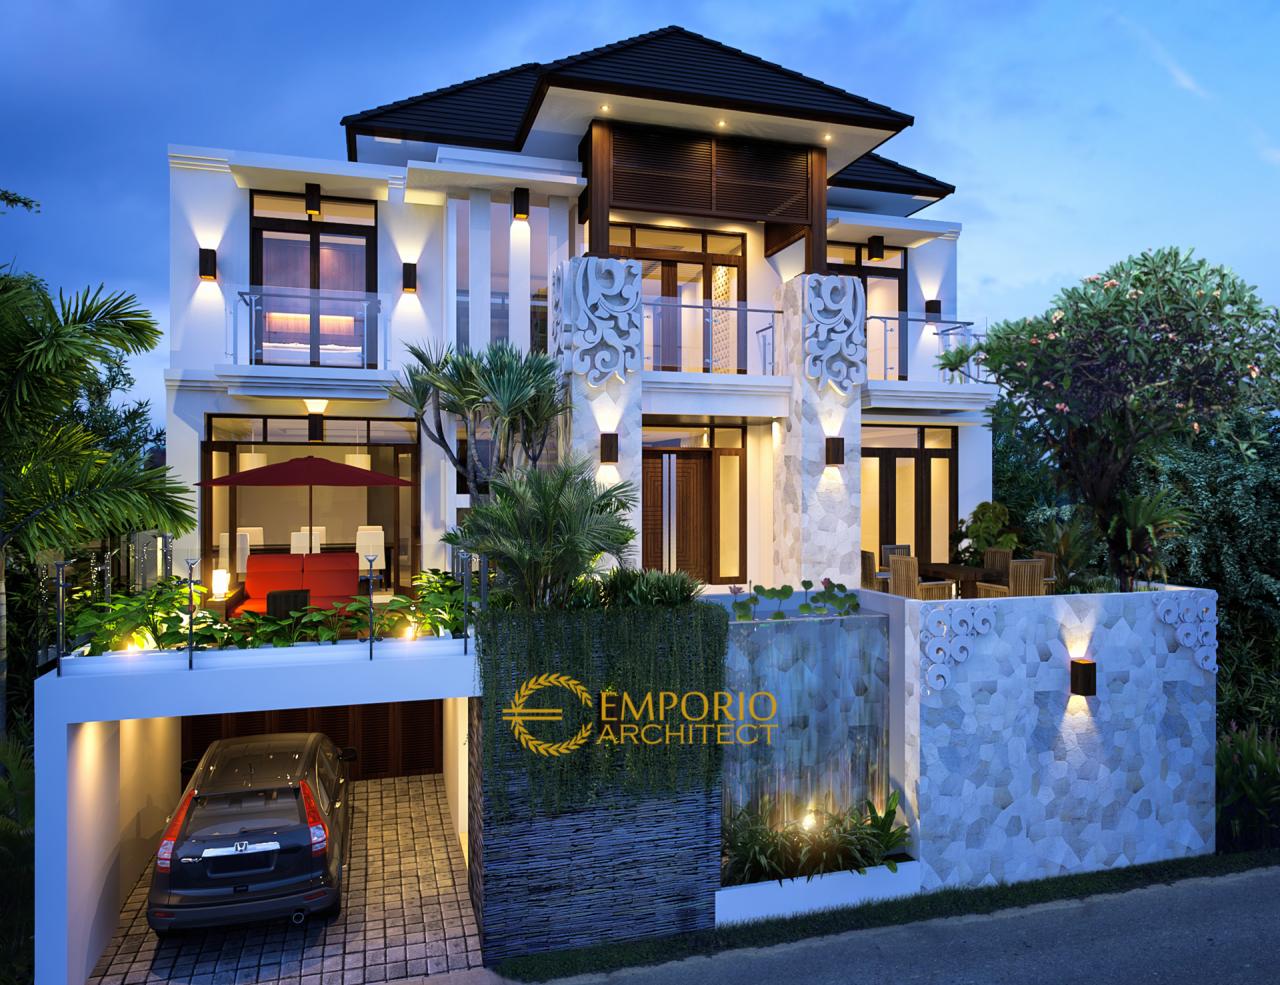 mrs-irma-simbolon-villa-bali-house-3-floors-design-jakarta